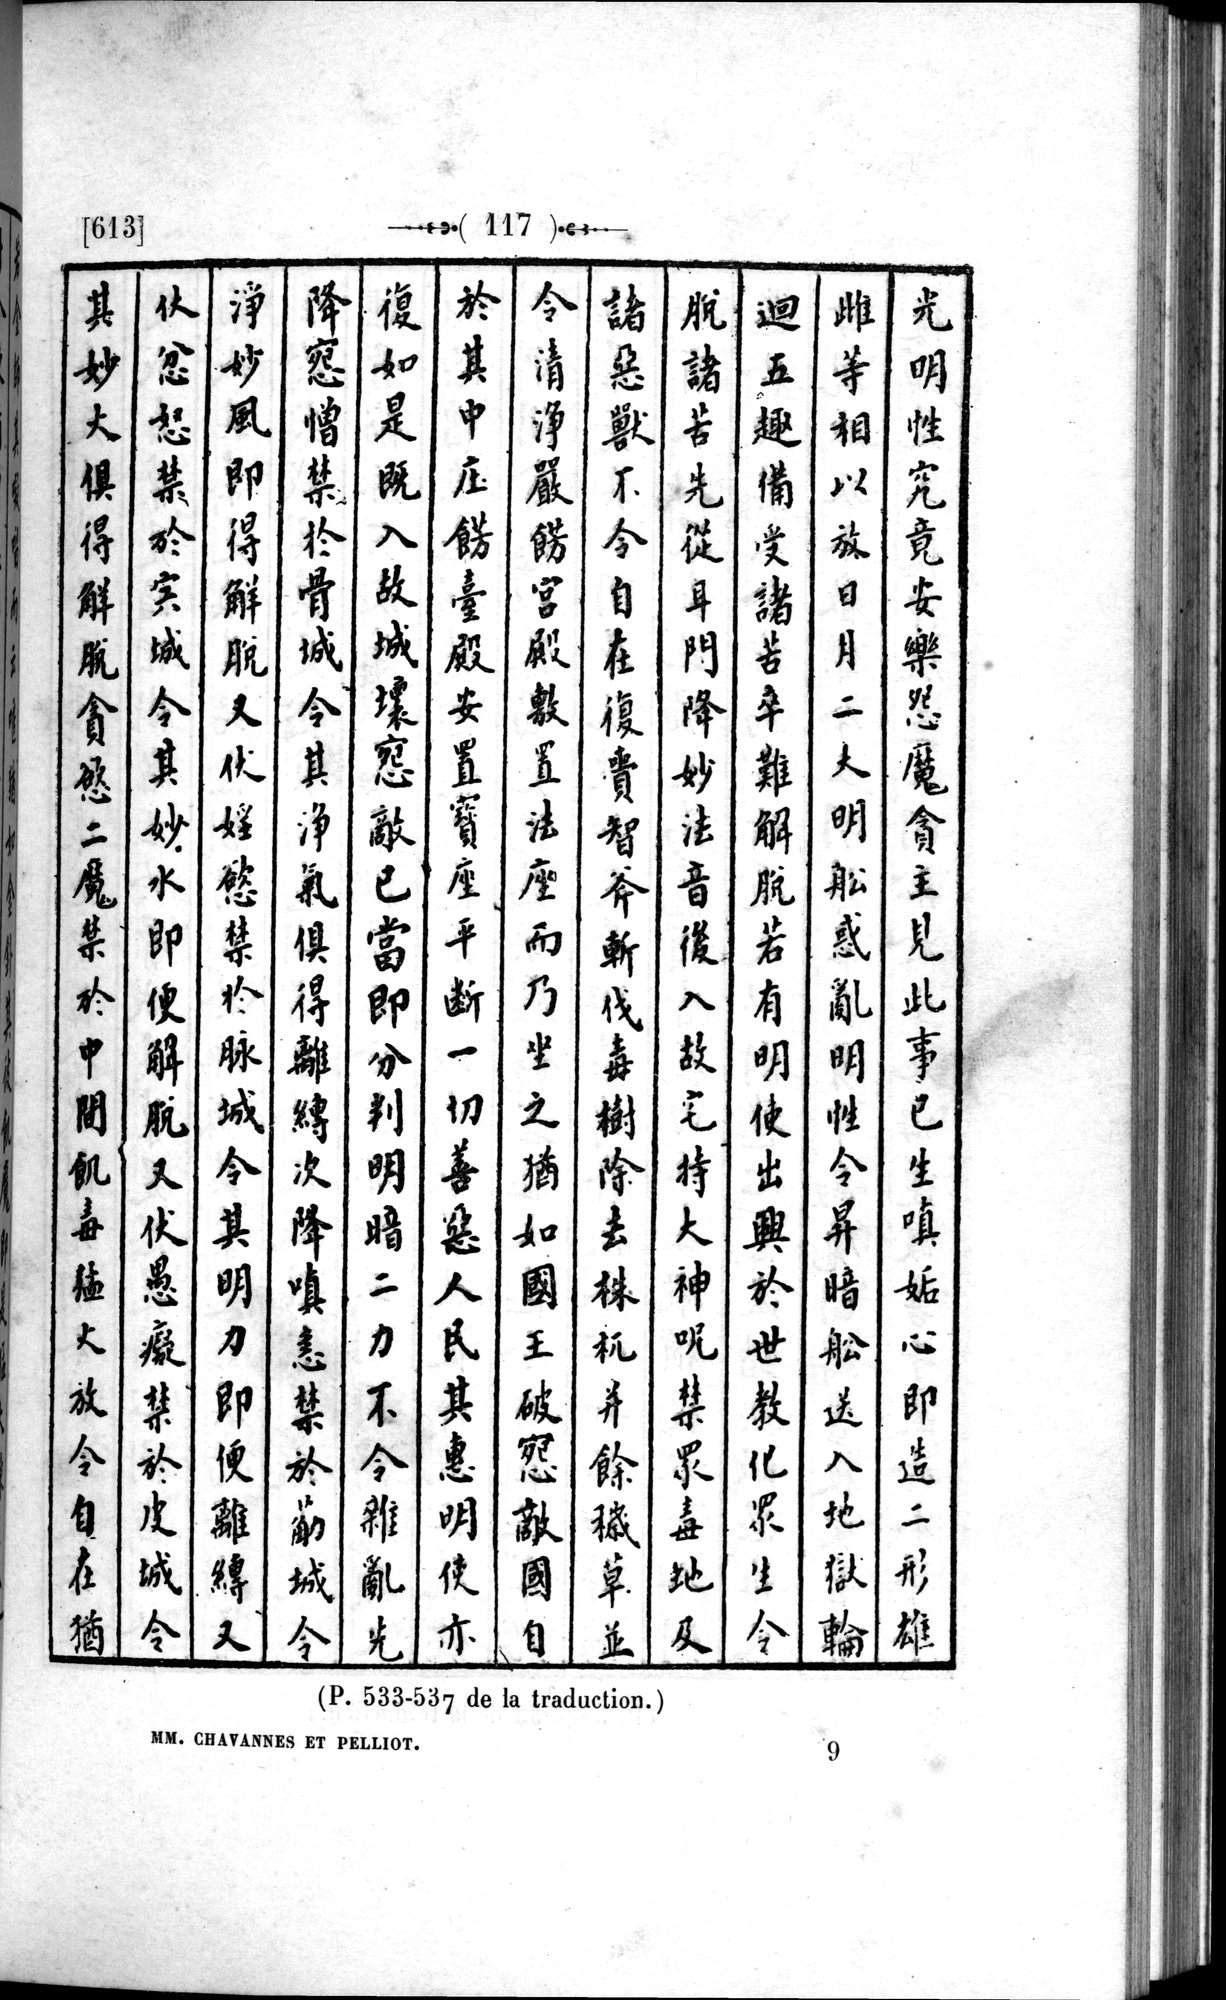 Un traité manichéen retrouvé en Chine : vol.1 / Page 127 (Grayscale High Resolution Image)